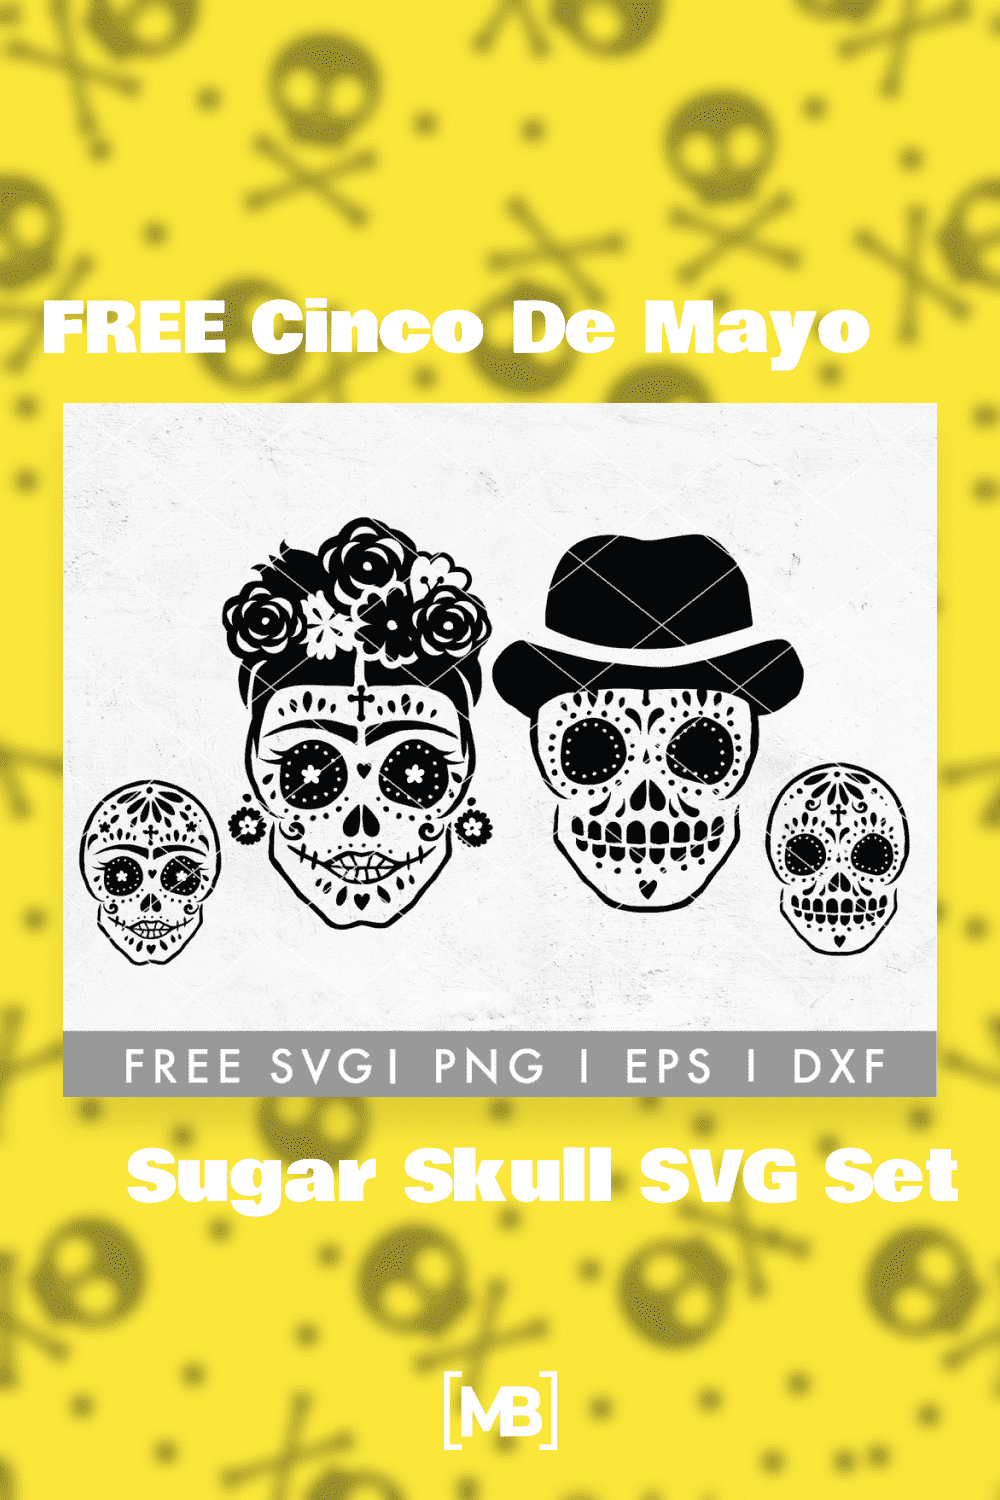 FREE Cinco De Mayo Sugar Skull SVG Set.